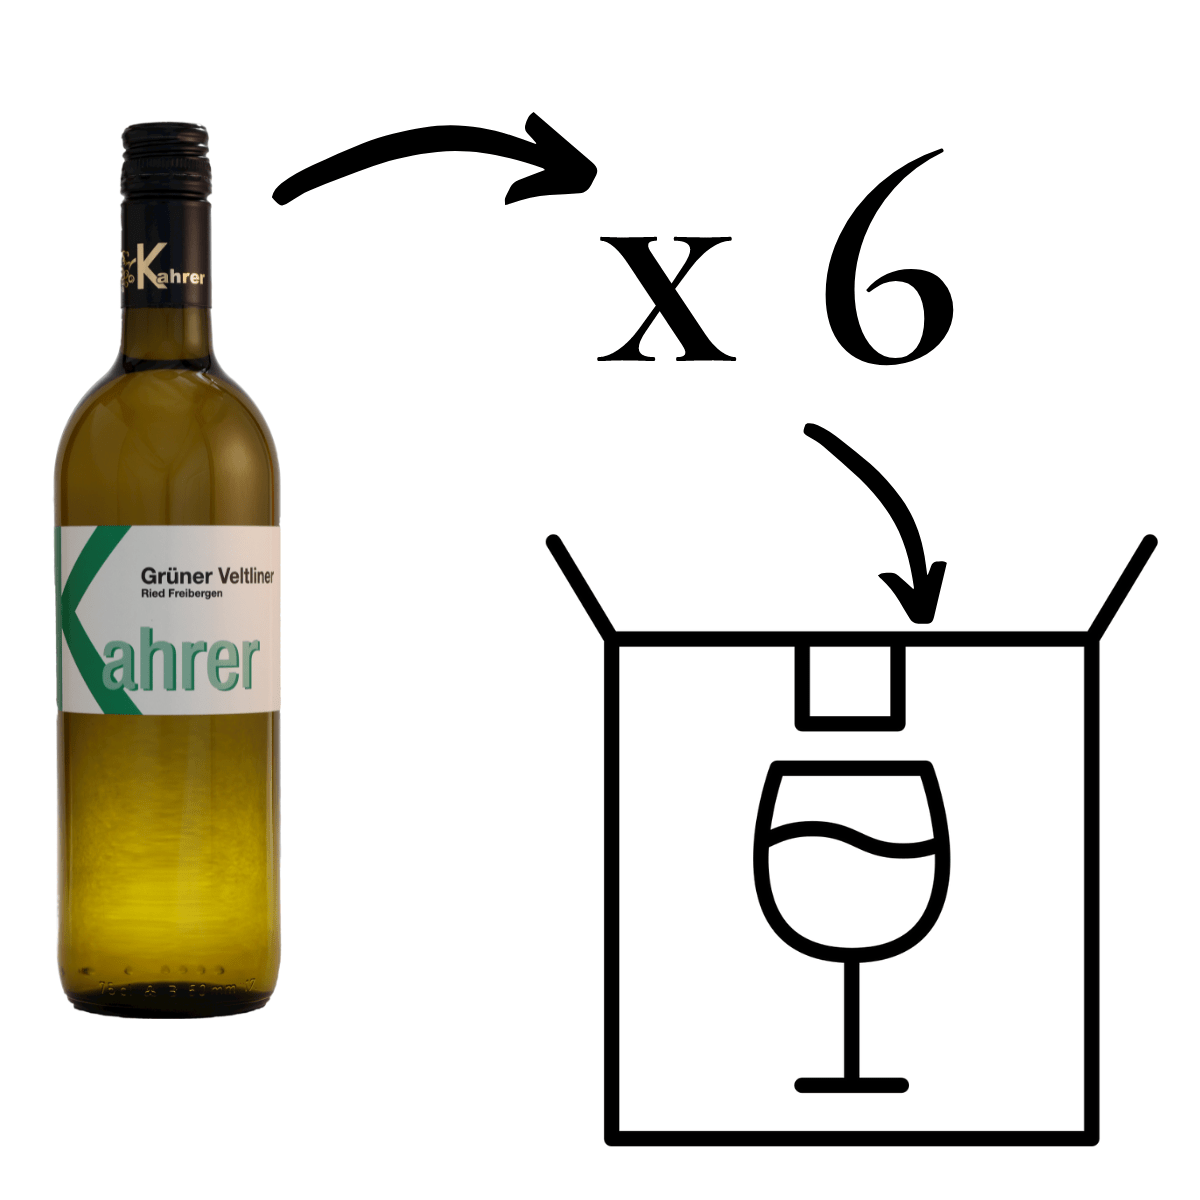 Grüner Veltliner Ried Freibergen Weißwein 6 Flaschen 6er Karton